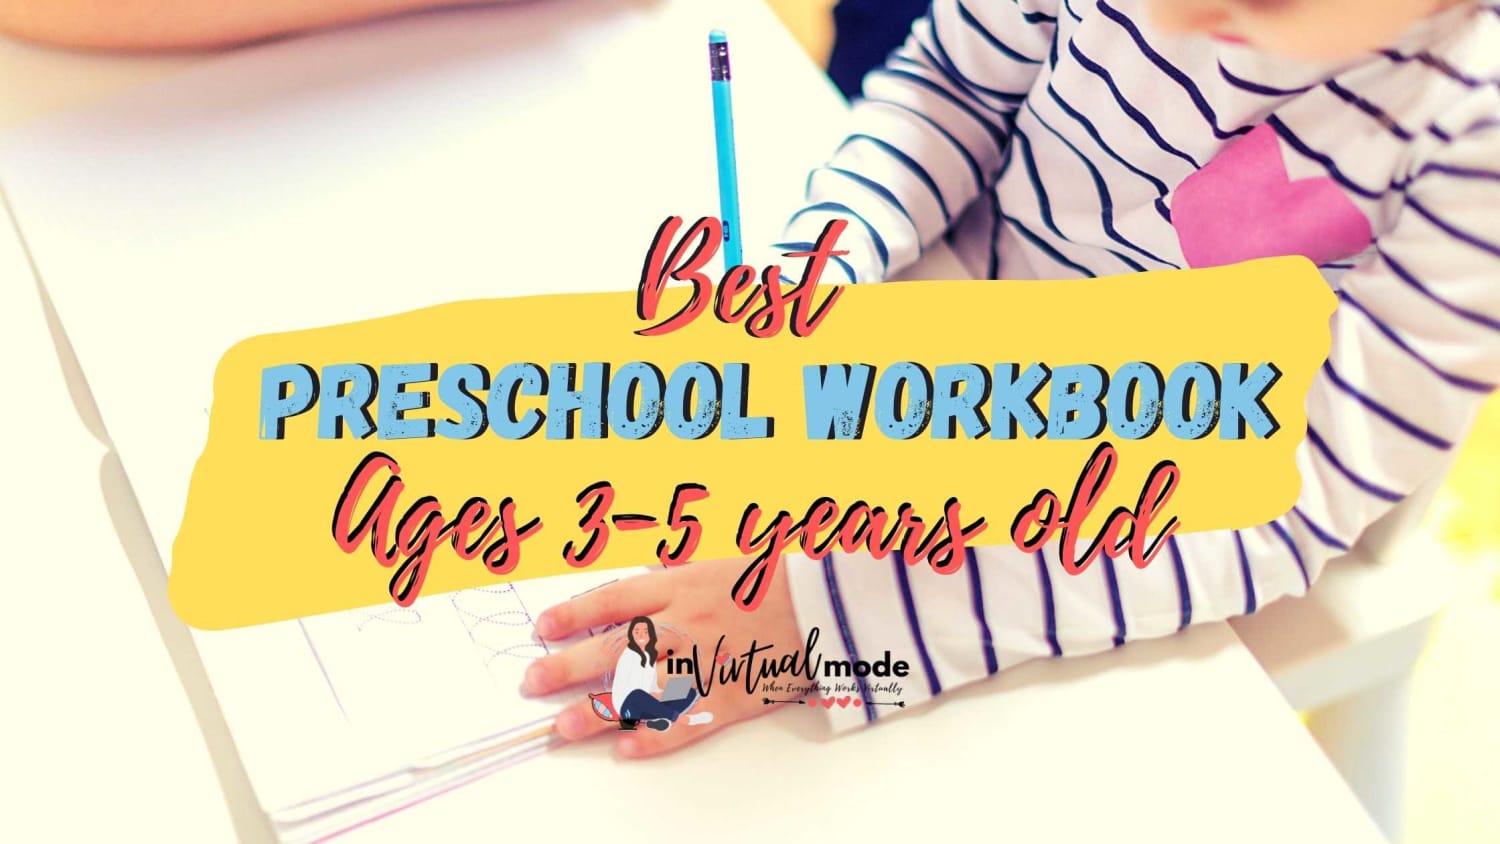 Best Preschool Workbook Ages 3-5 years old